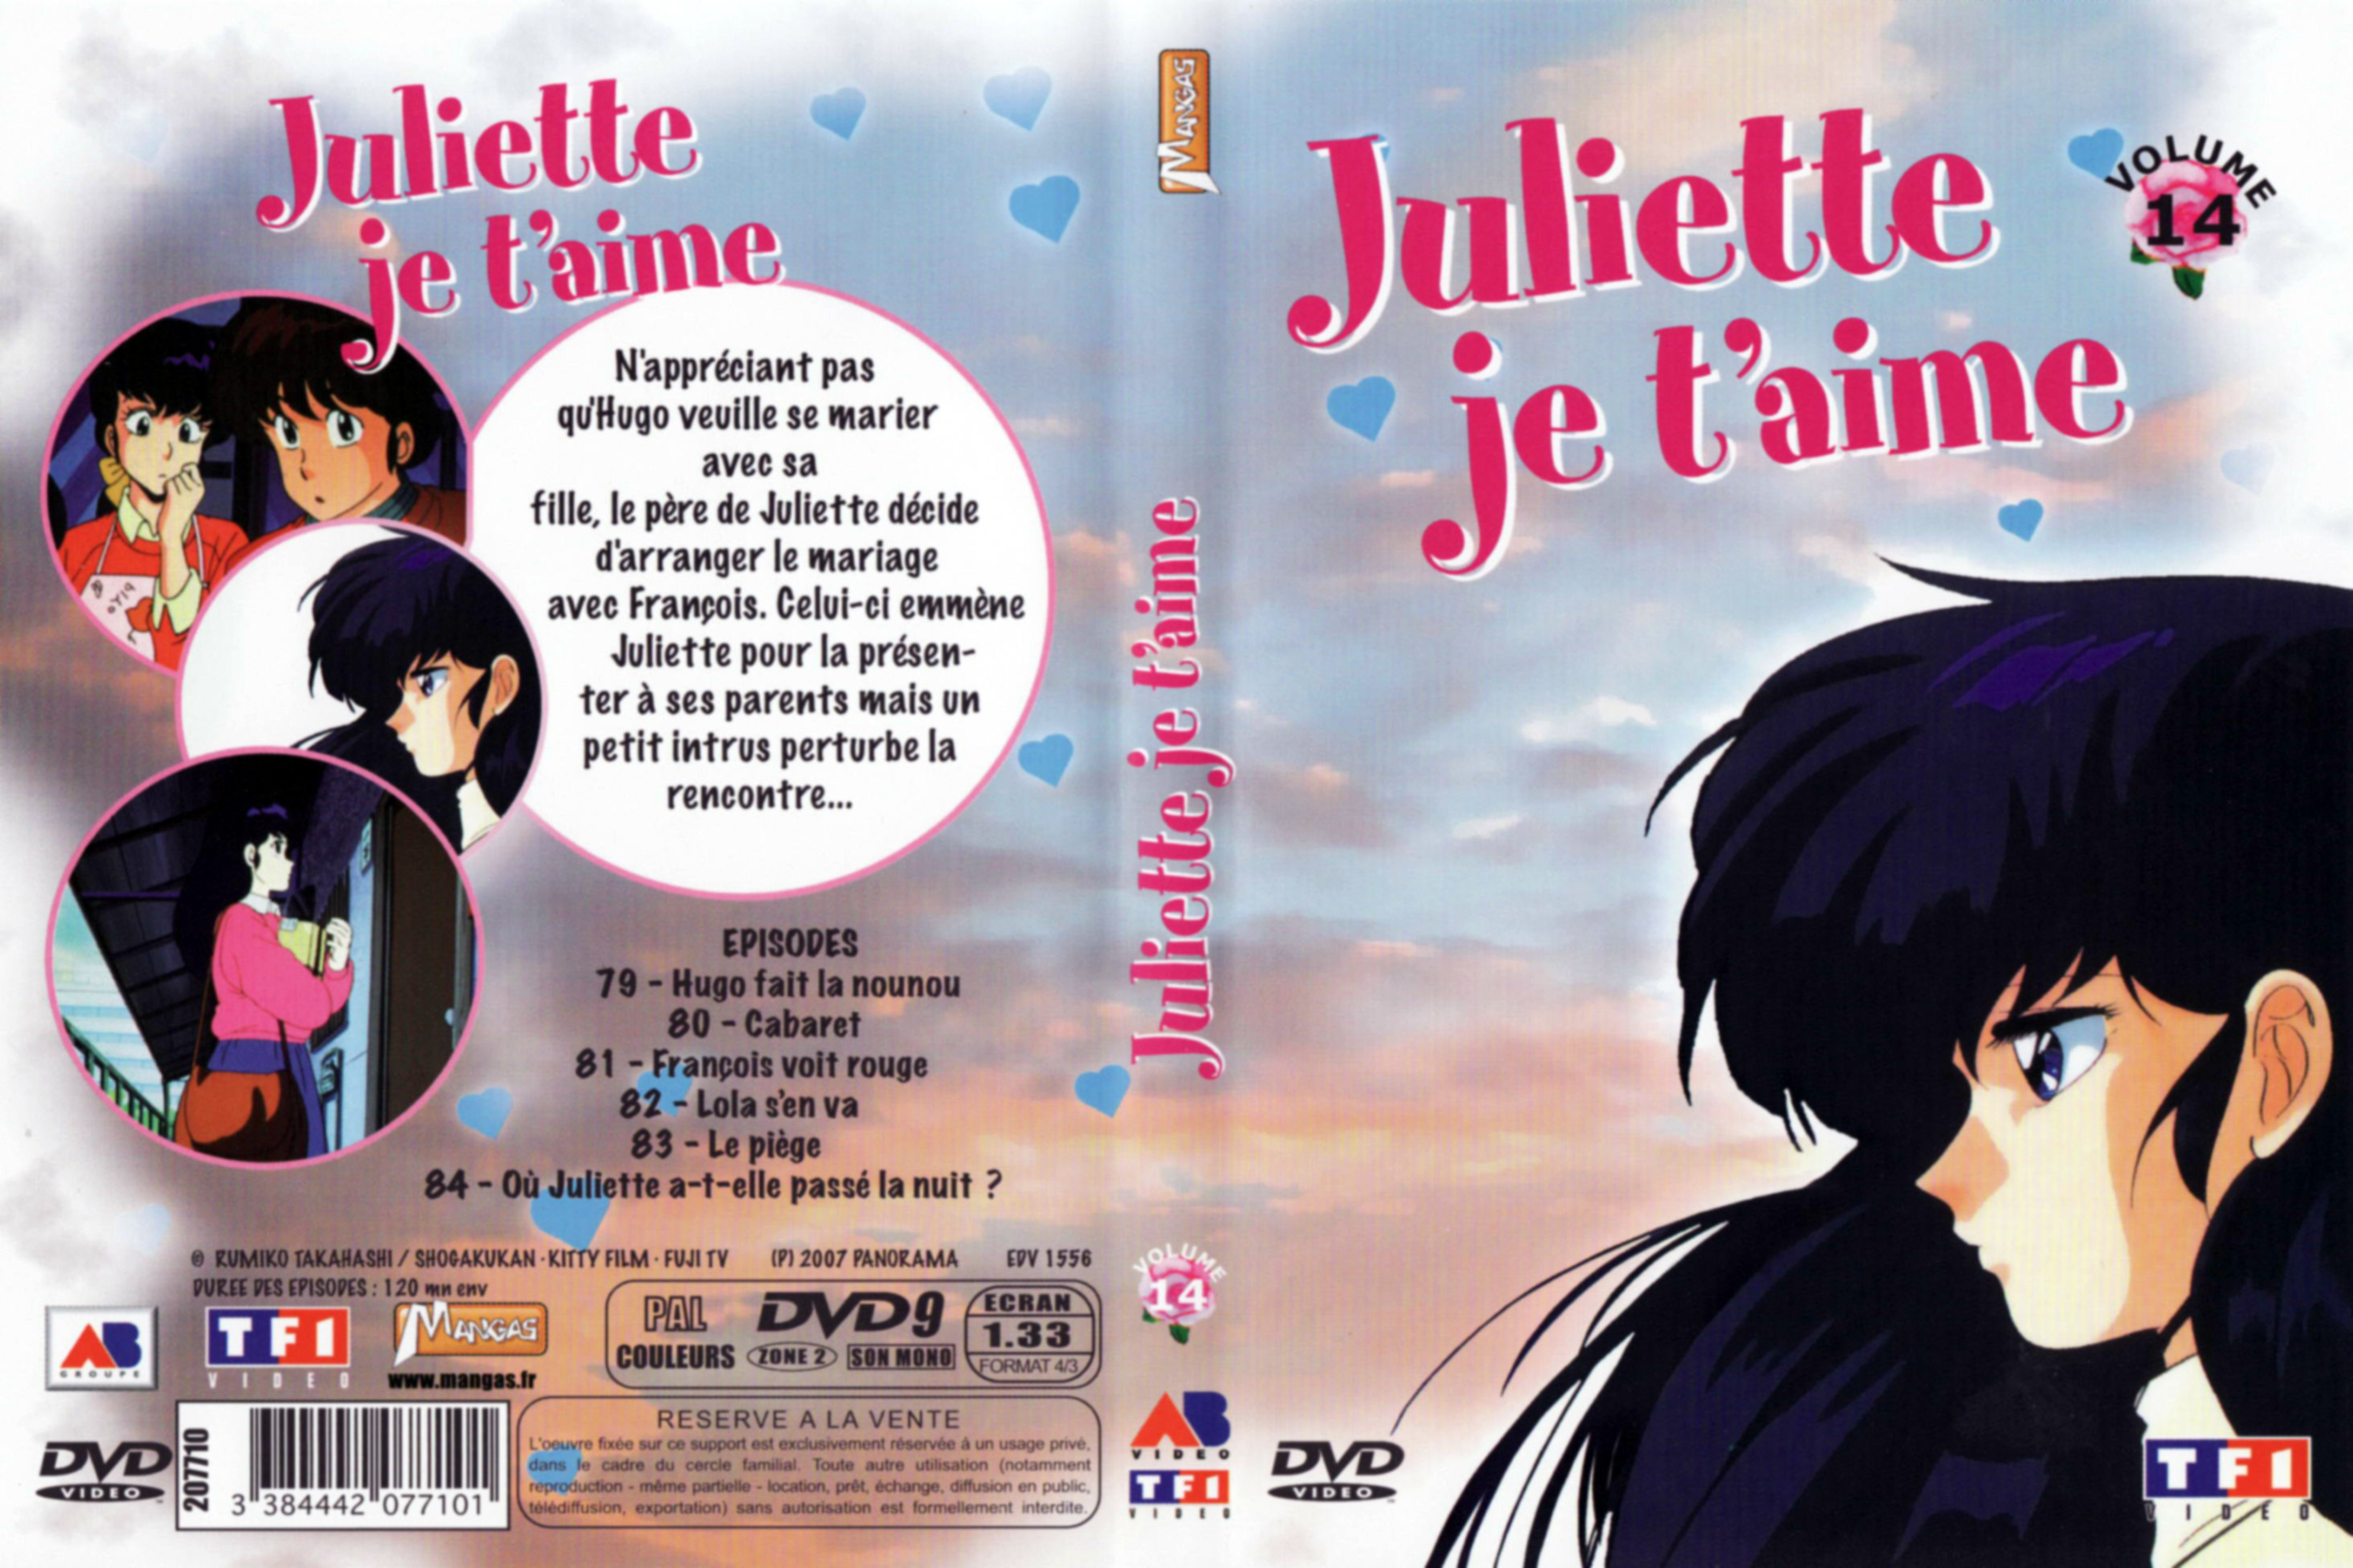 Jaquette DVD Juliette je t aime vol 14